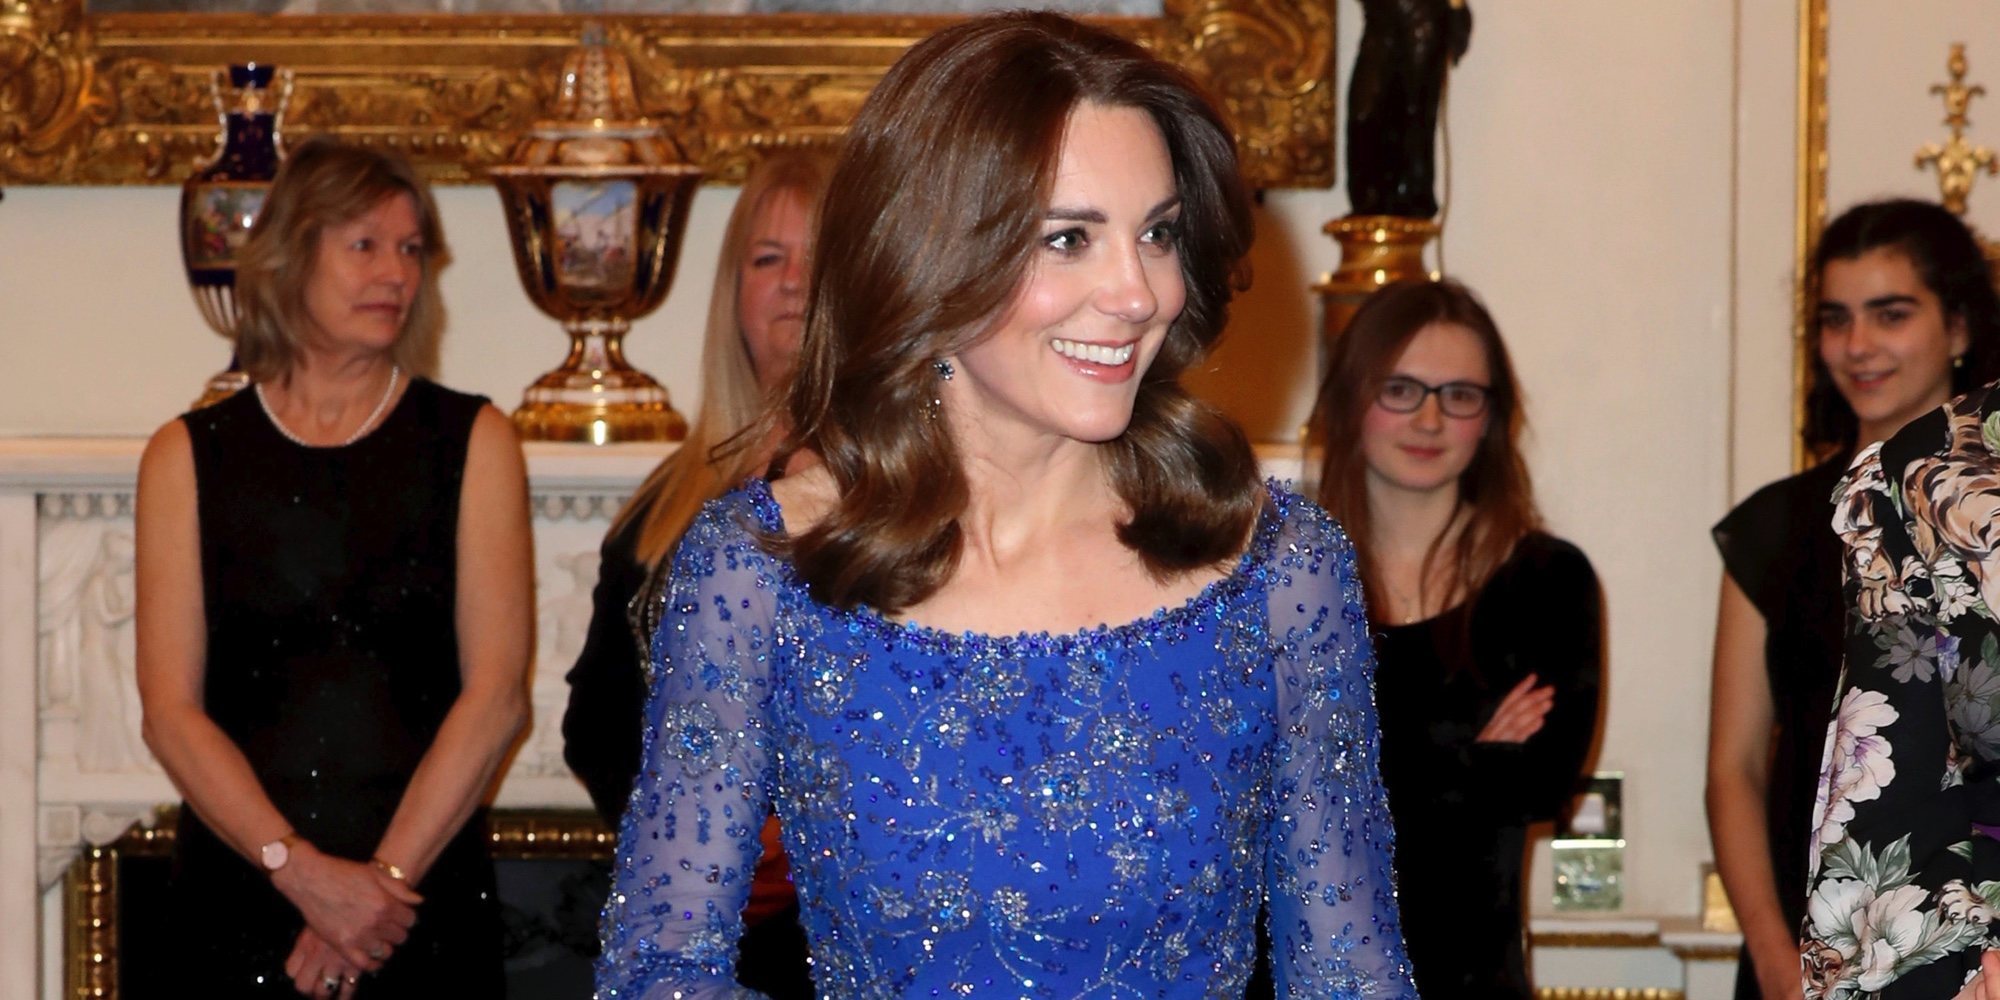 La gran noche de Kate Middleton en la celebración del aniversario de Place2be con el apoyo de la Reina Isabel